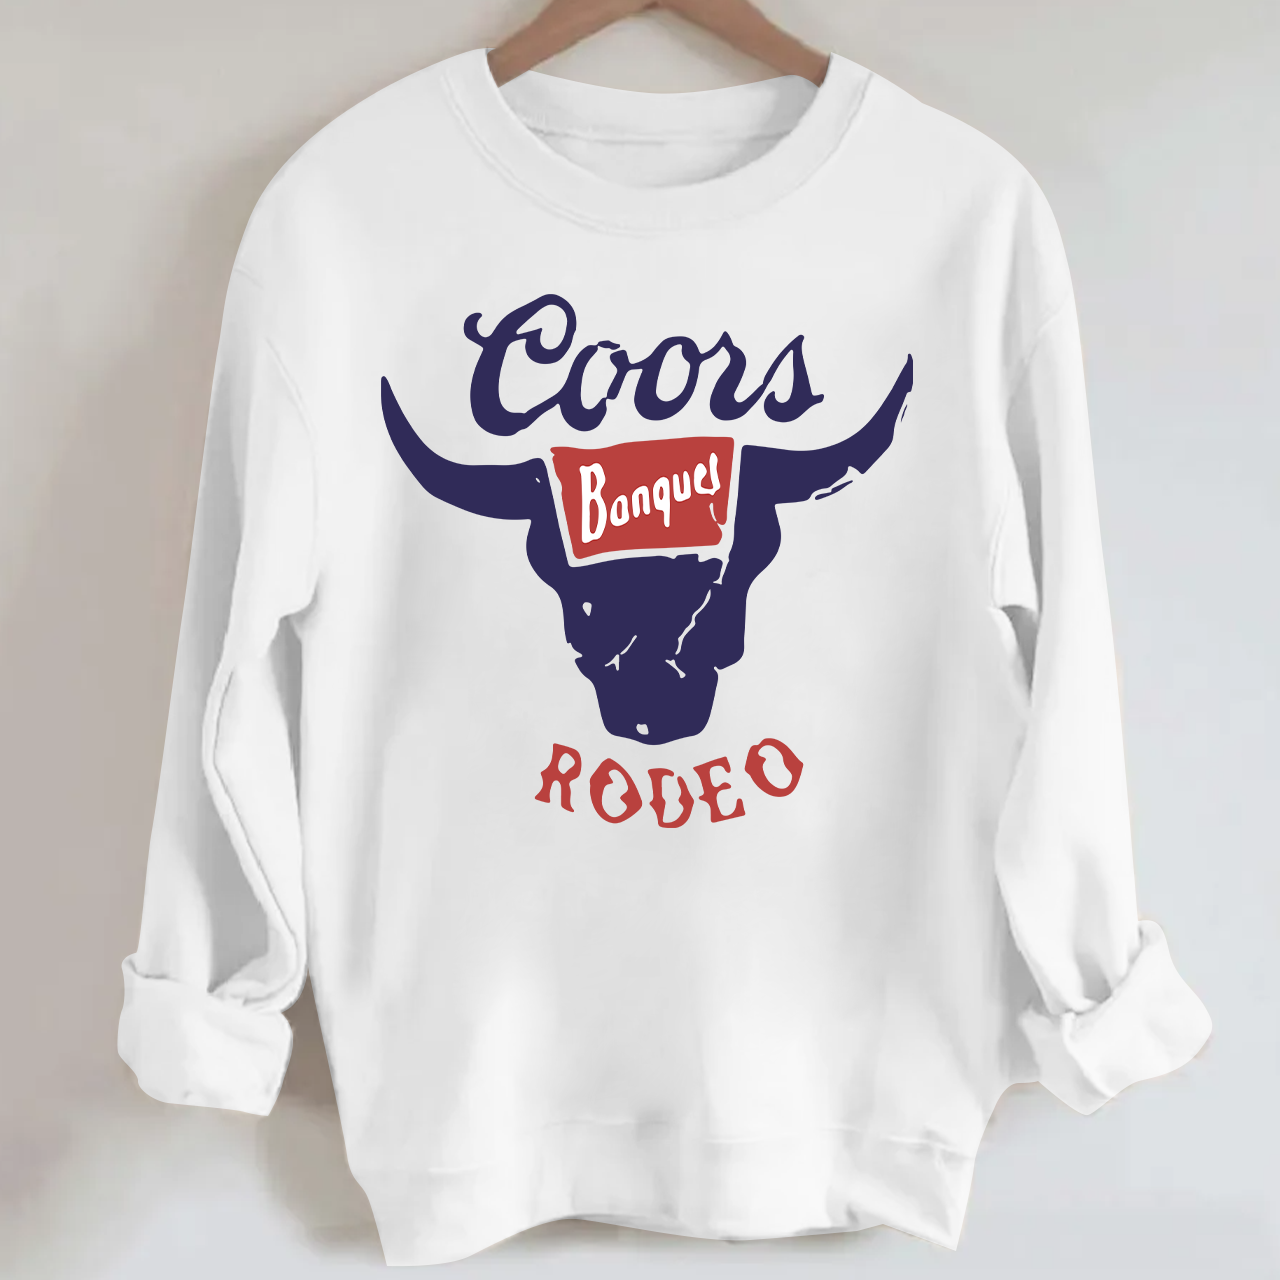 Coors Banquet Rodeo Retro Inspired Sweatshirt